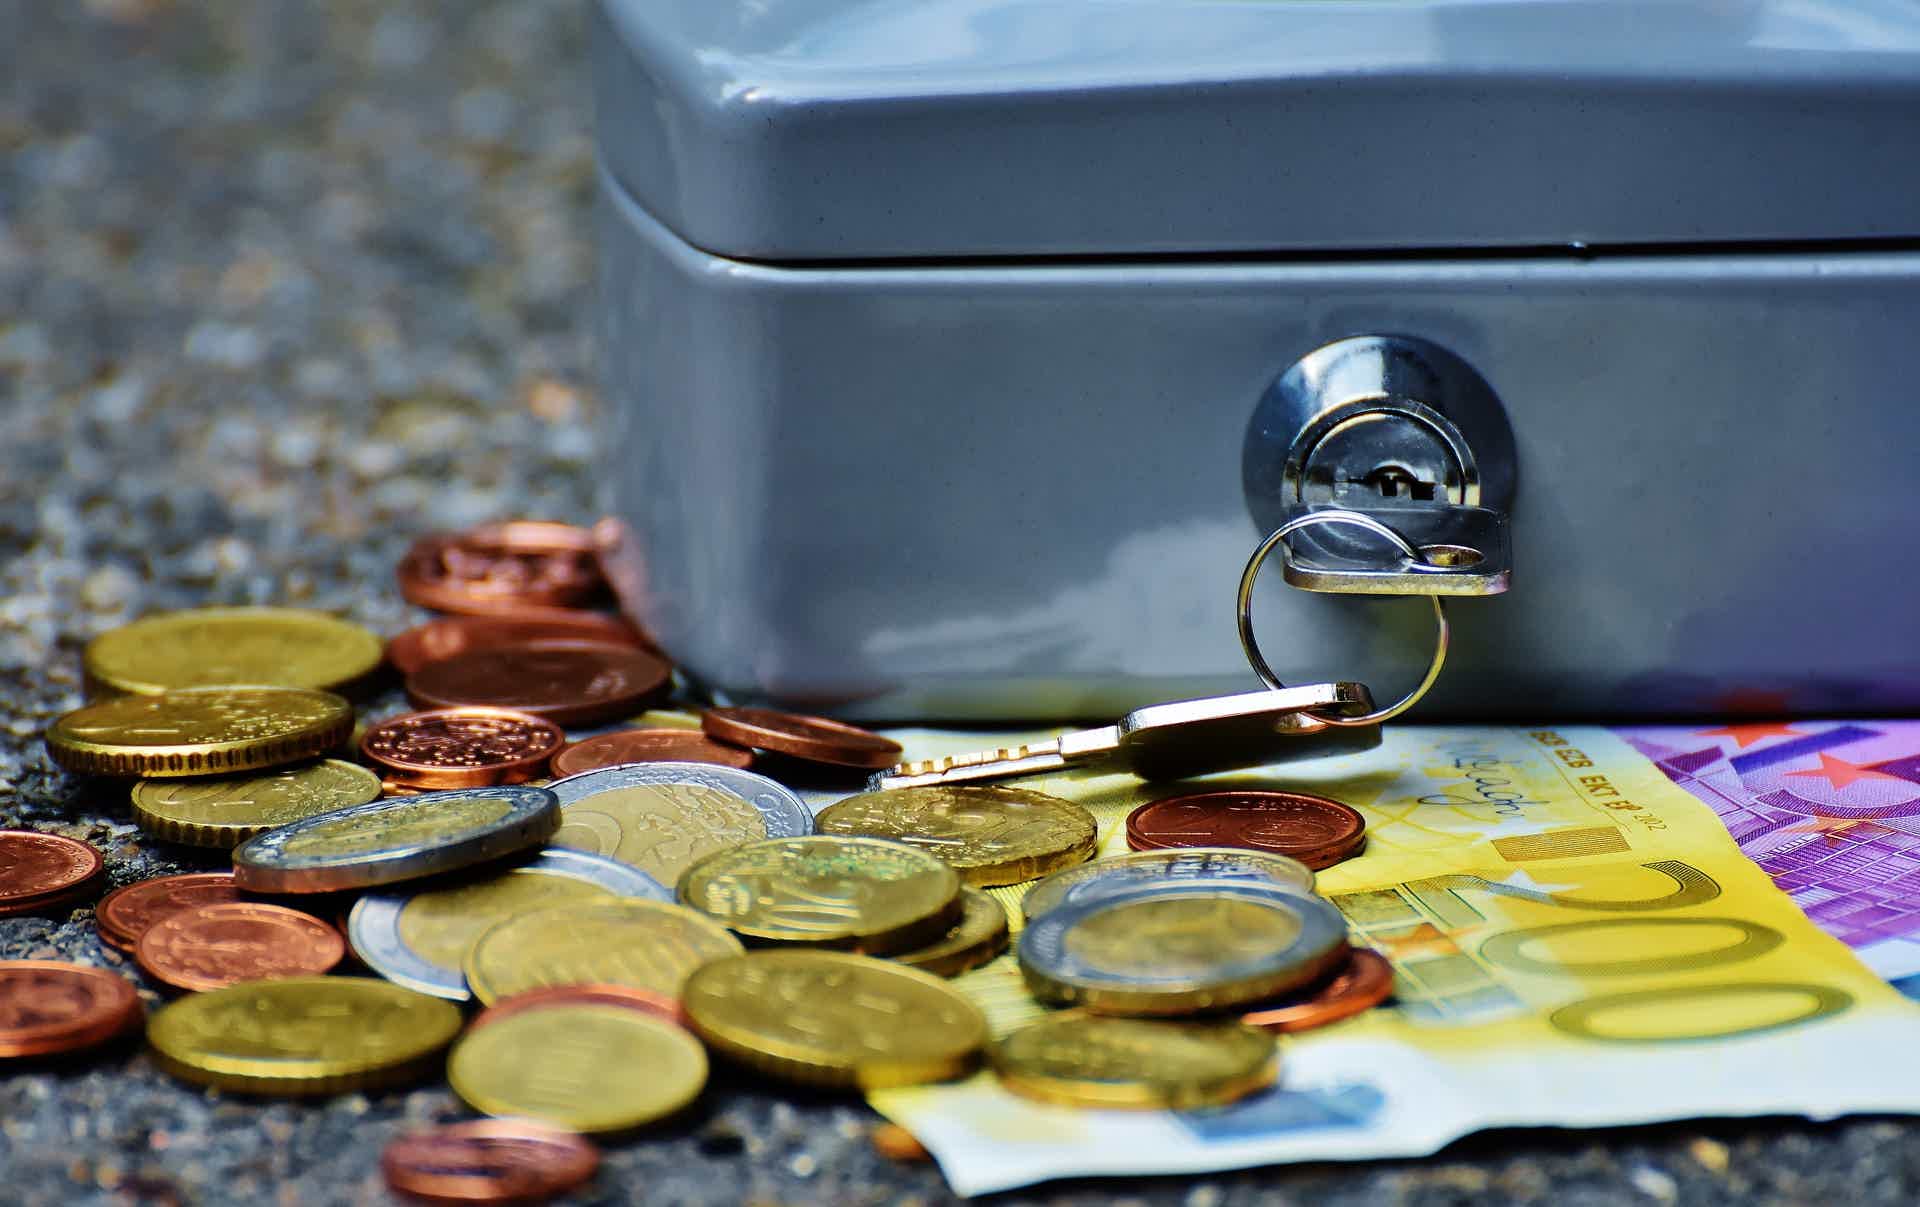 Entenda o que está acontecendo com a renda fixa. Foto: Pexels / Pixabay